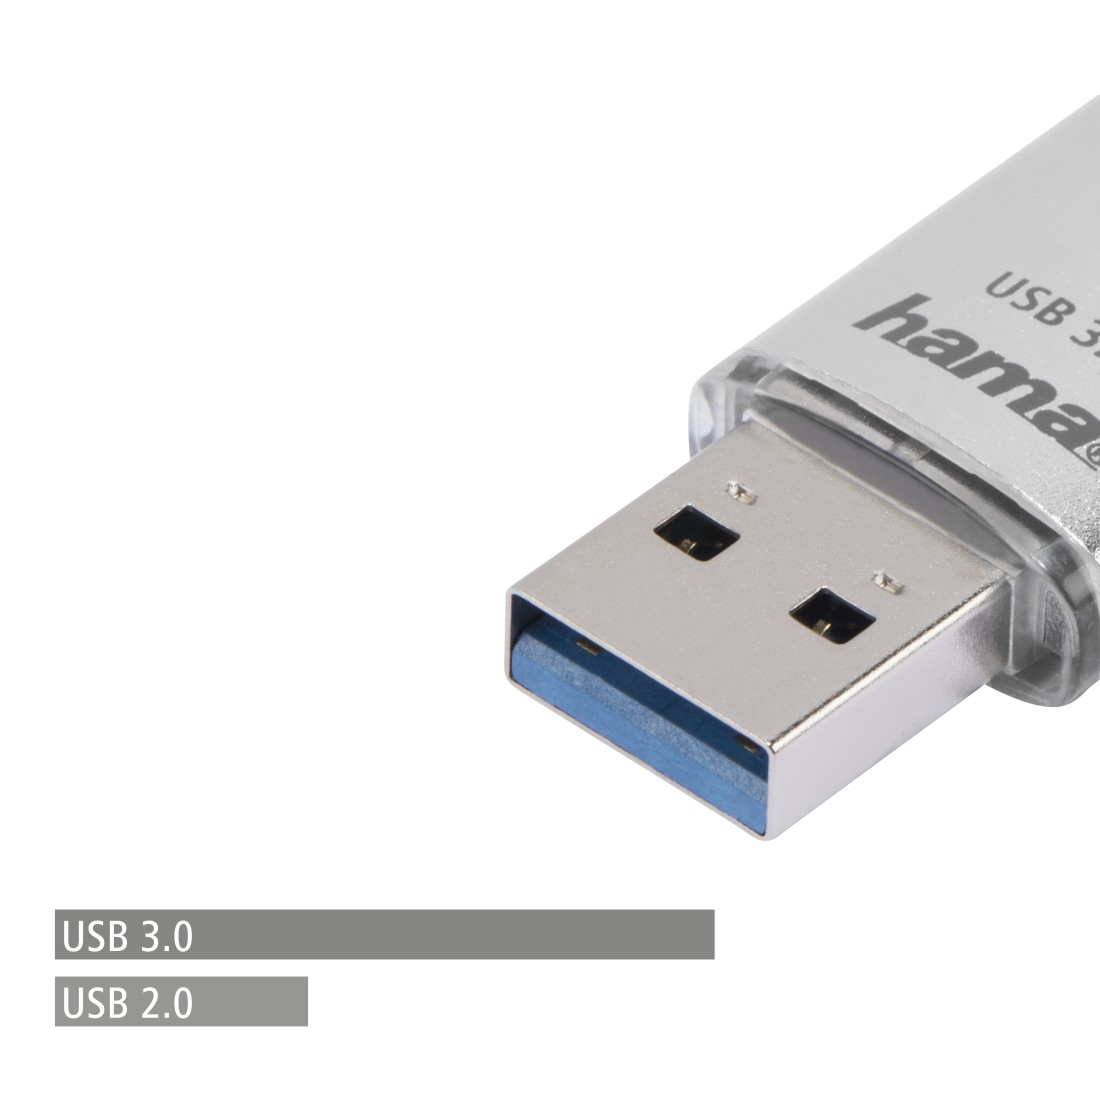 HAMA C-Laeta USB-Stick, 40 MB/s, 128 Silber GB